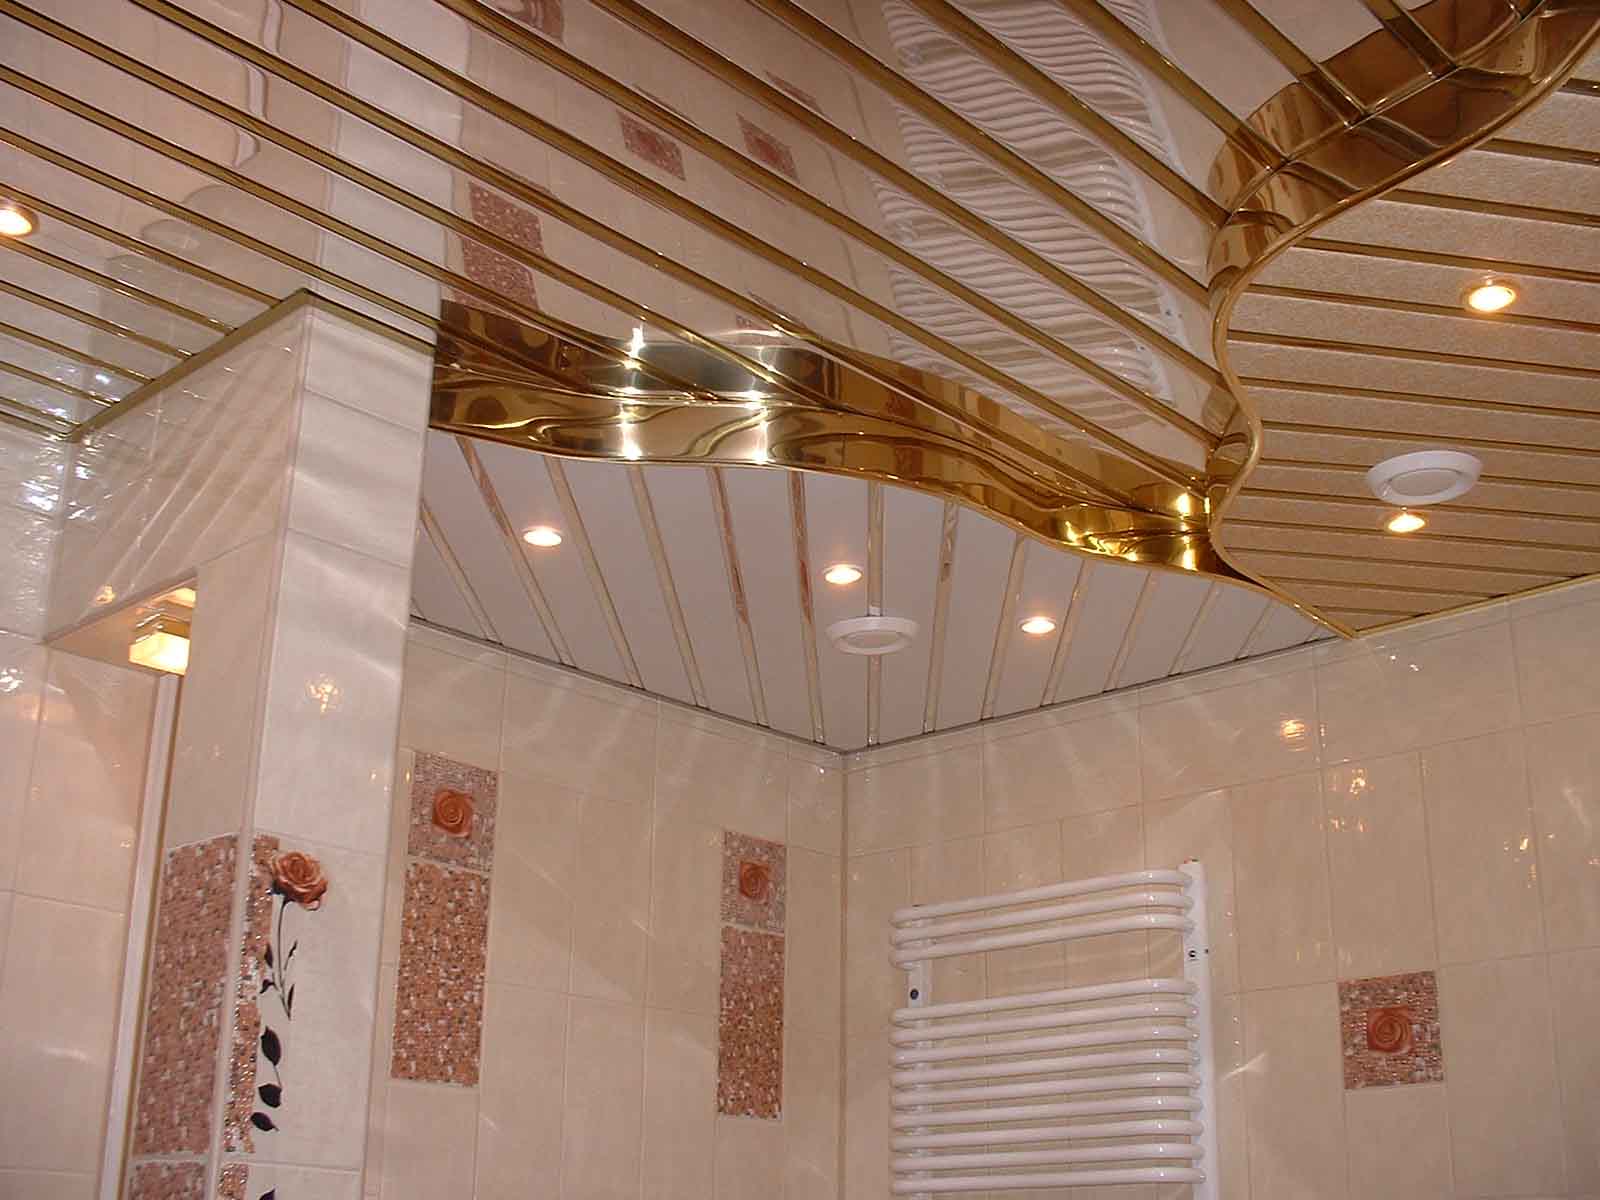 Супер-идеи дизайна отделки ванной комнаты пластиковыми панелями